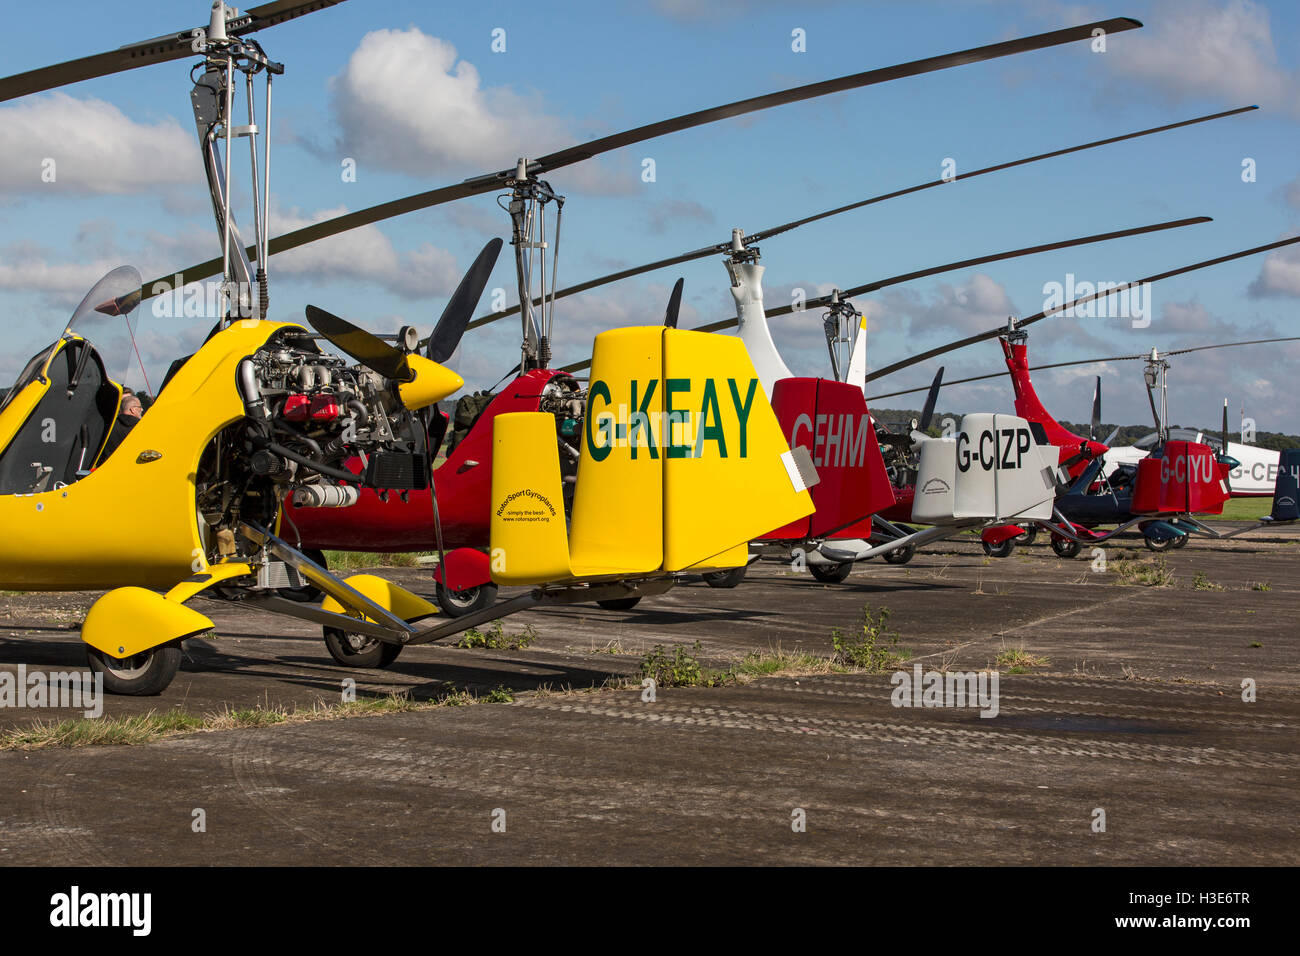 Eine Reihe von Autogyro Flugzeug auf einem Flughafen. Stockfoto